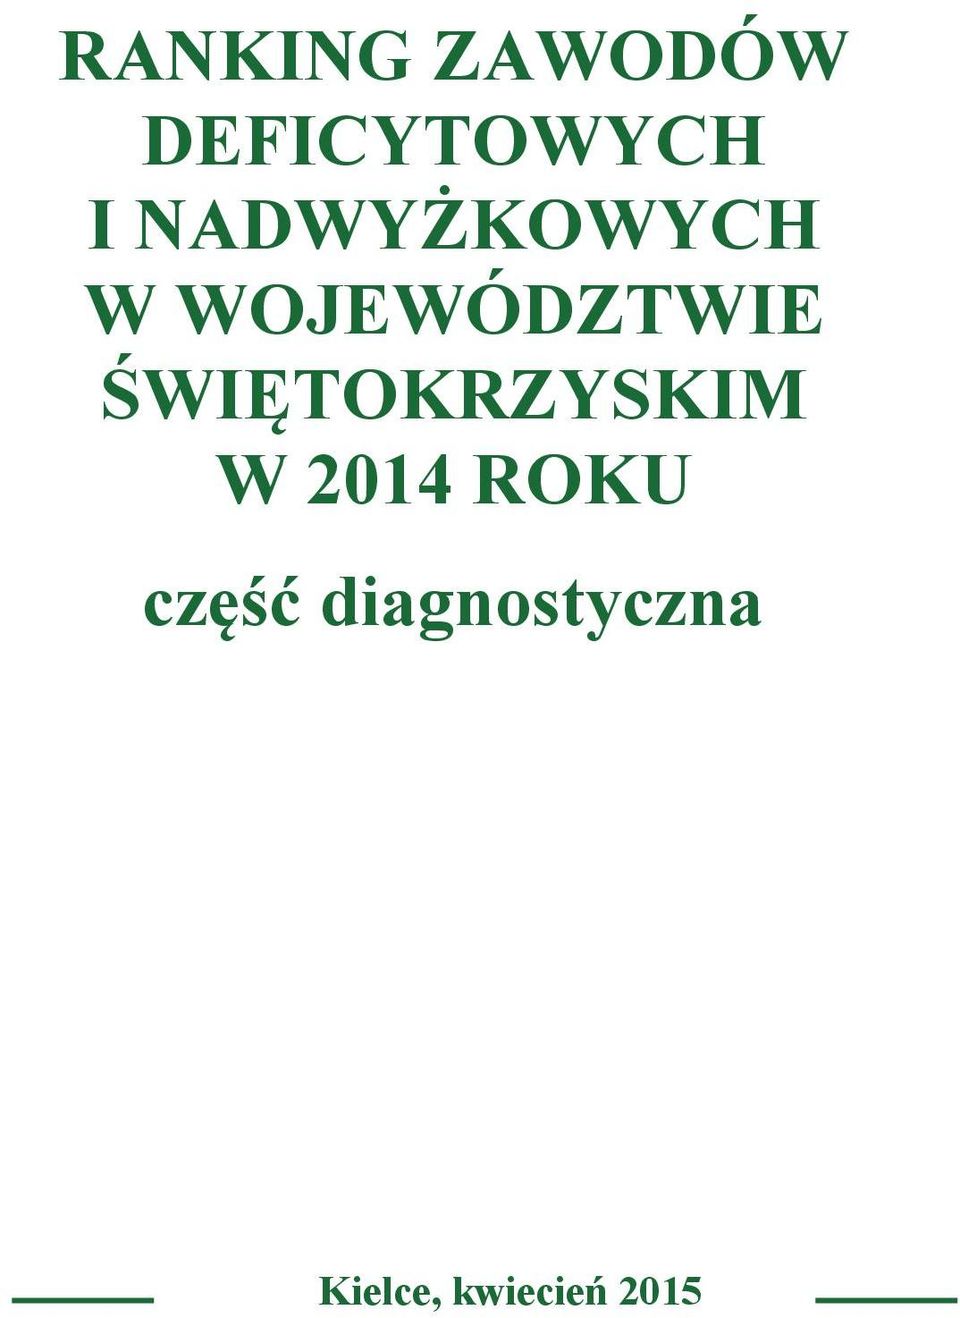 TOKRZYSKIM W 2014 ROKU cz